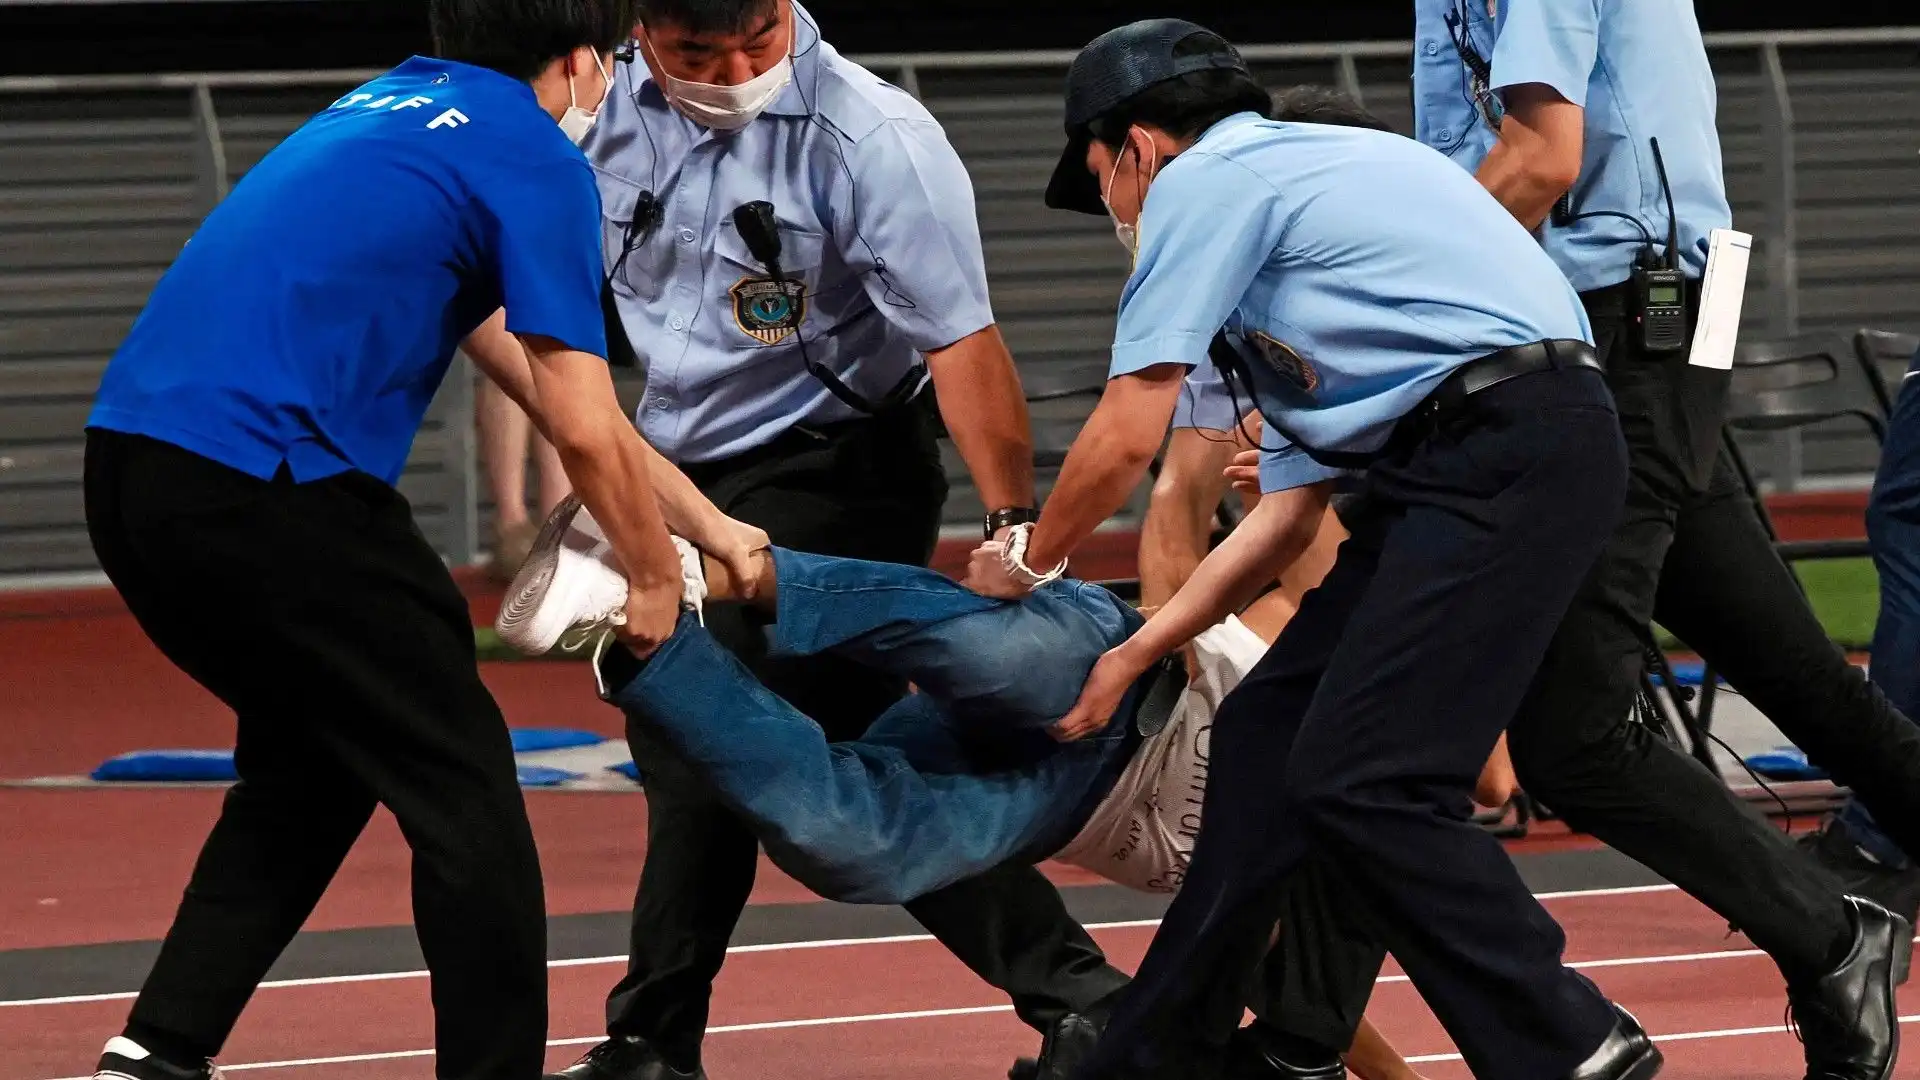 Brivido della serata: un tifoso ha invaso il capo ed è stato catturato dalle forze dell'ordine